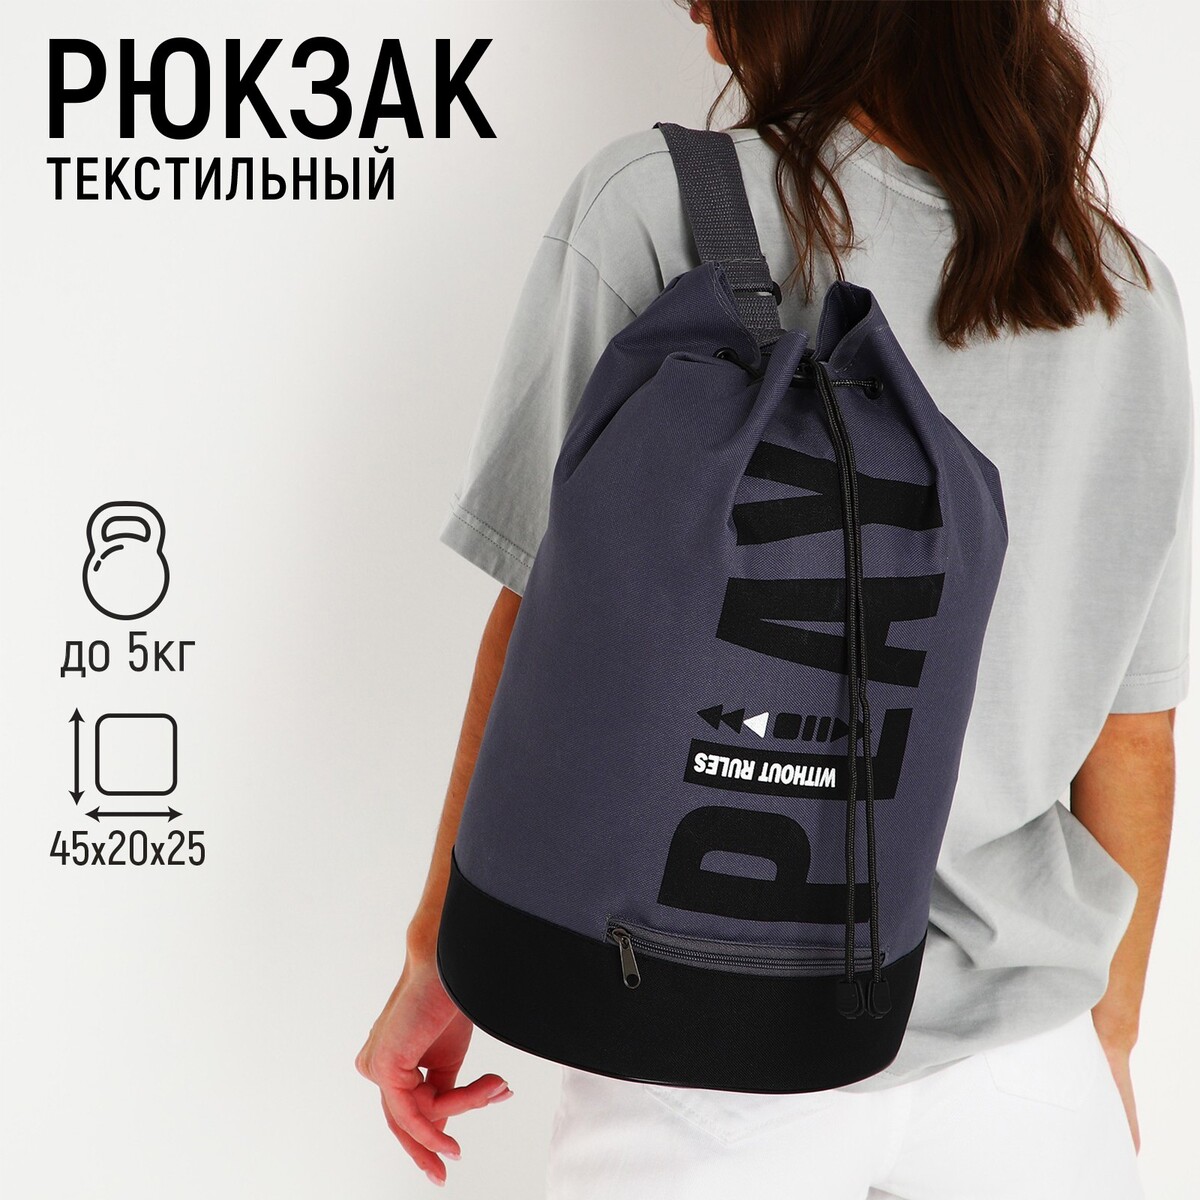 Рюкзак-торба молодежный, отдел на стяжке шнурком, цвет черный/серый NAZAMOK